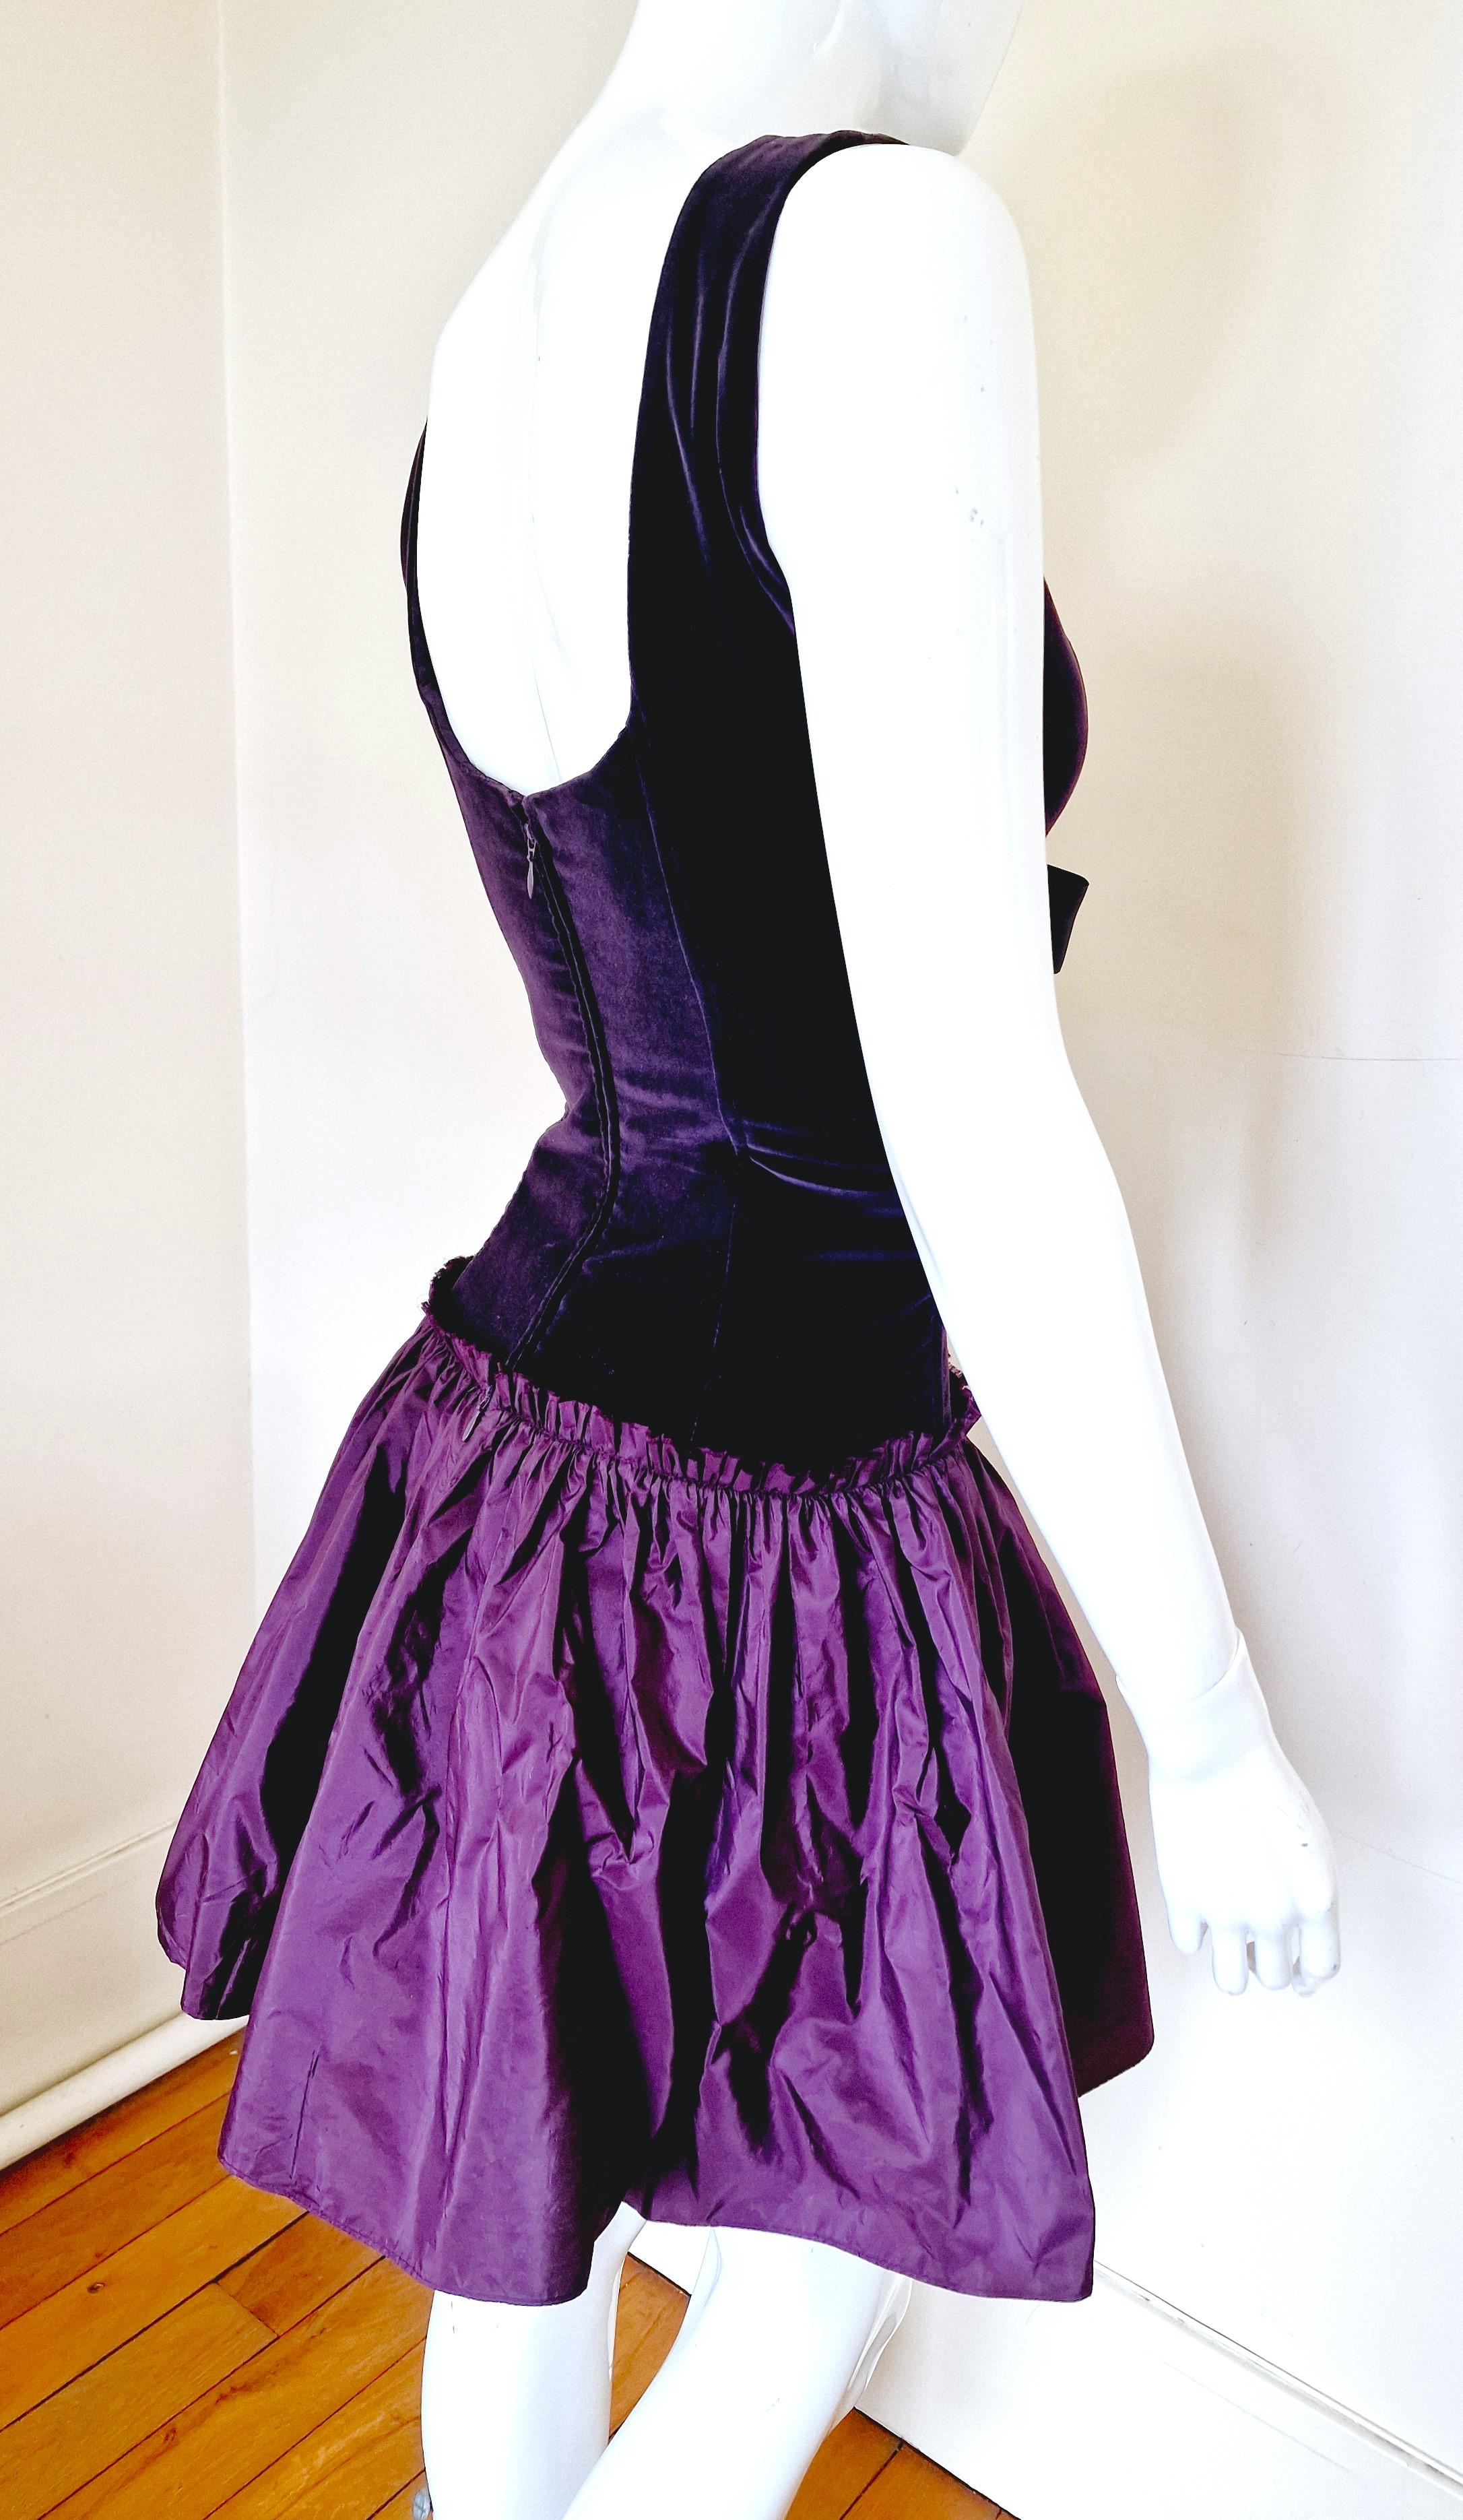 Alexander McQueen Corset Bustier Lace Up Tutu Petticoat Violet Medium Gown Dress For Sale 10